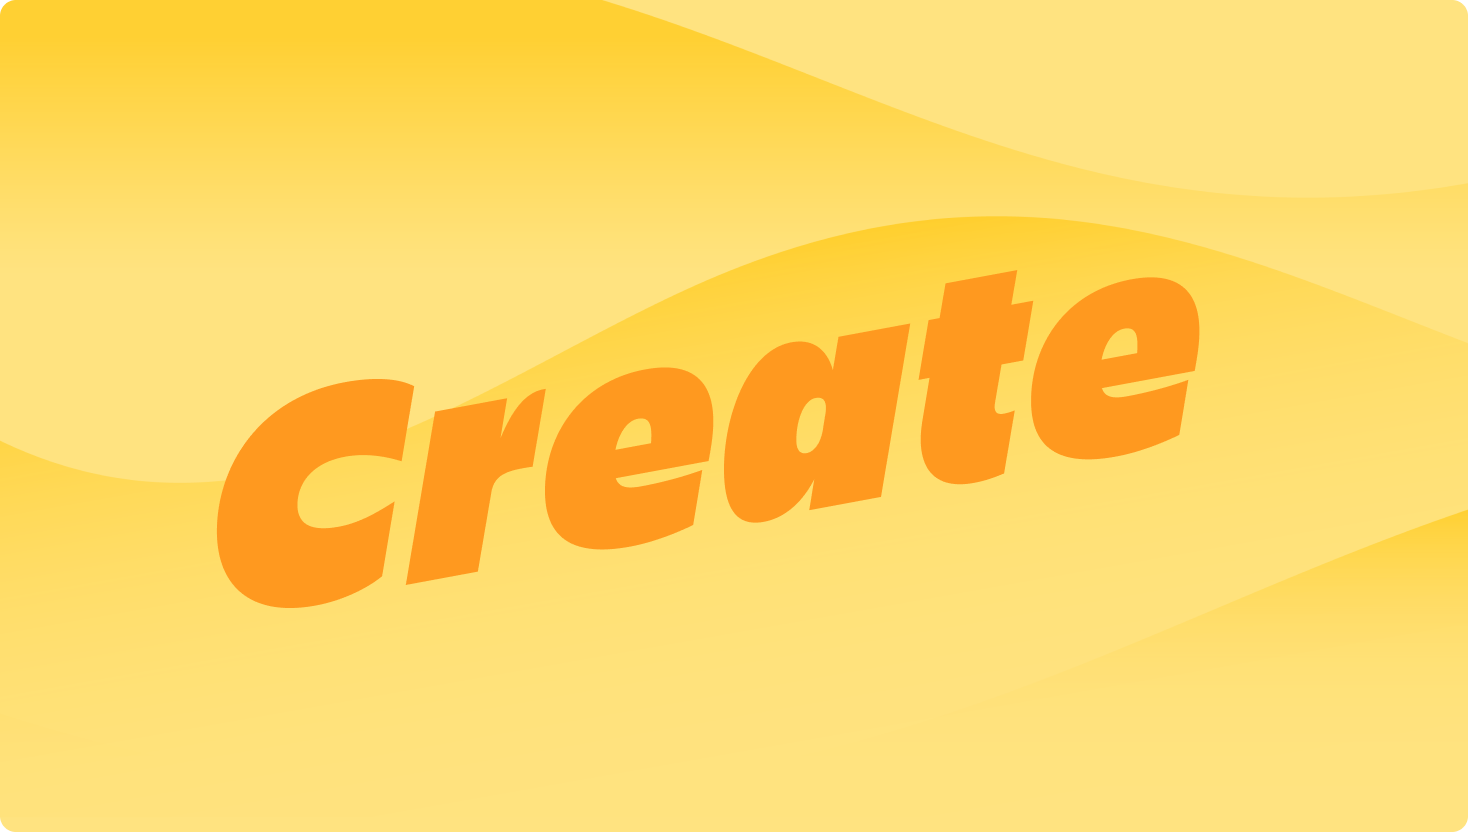 Een afbeelding van een gele golf met het woord Create prominent op de voorgrond